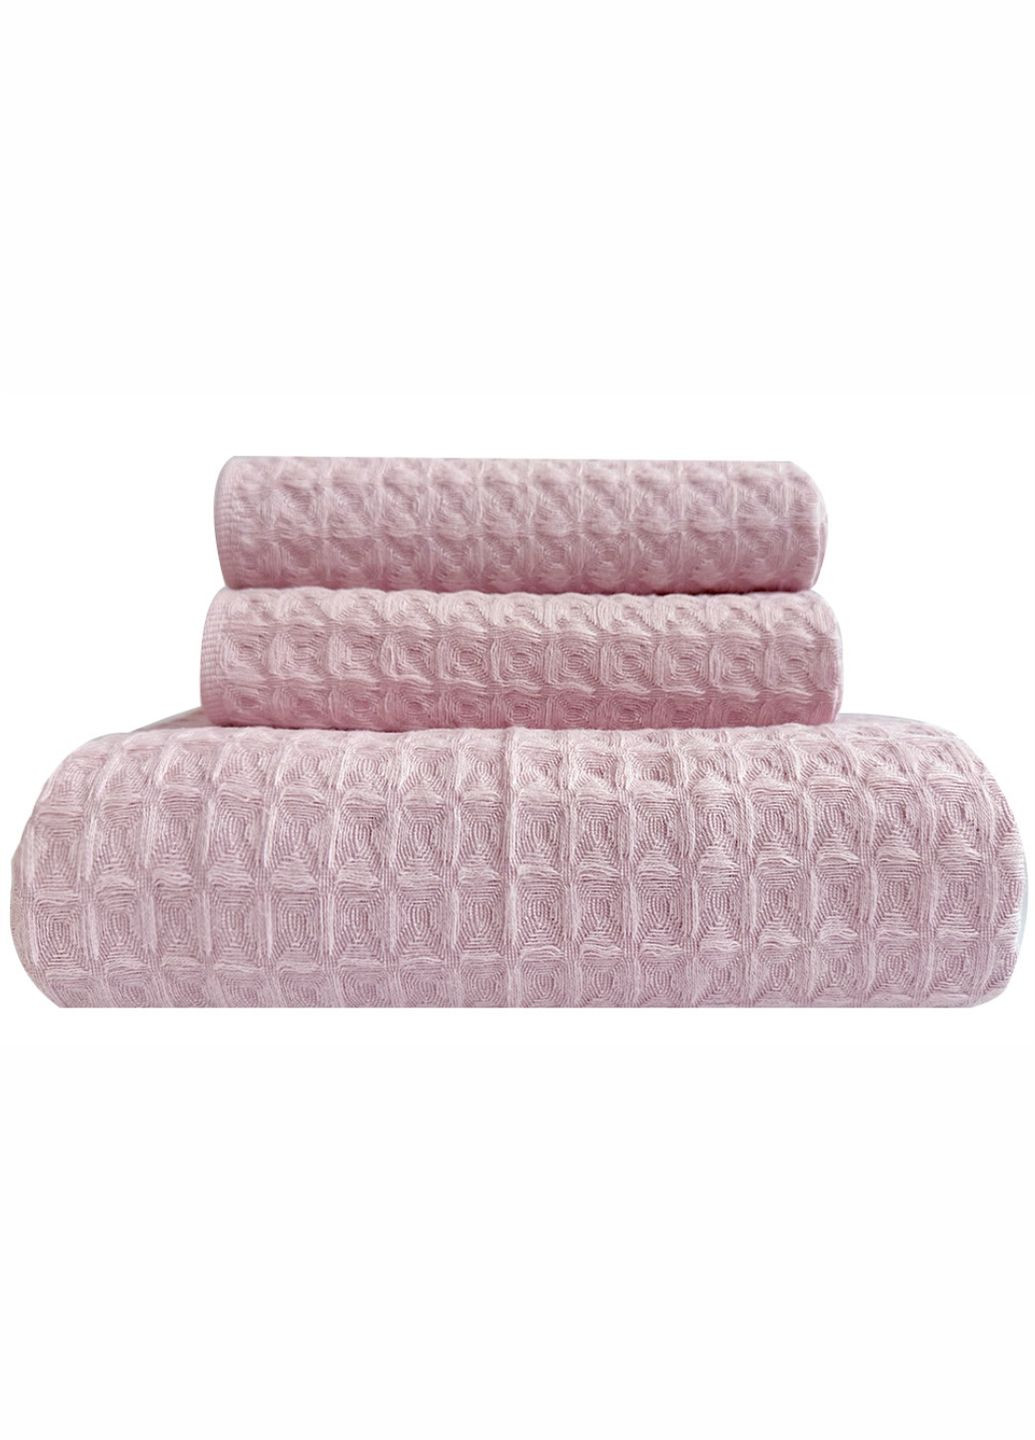 Lovely Svi набір вафельних рушників 3 в 1: 70 на 140 см, 2 шт - 34 на 72 см - для ванної, готелів, spa, саун - рожевий рожевий виробництво - Китай